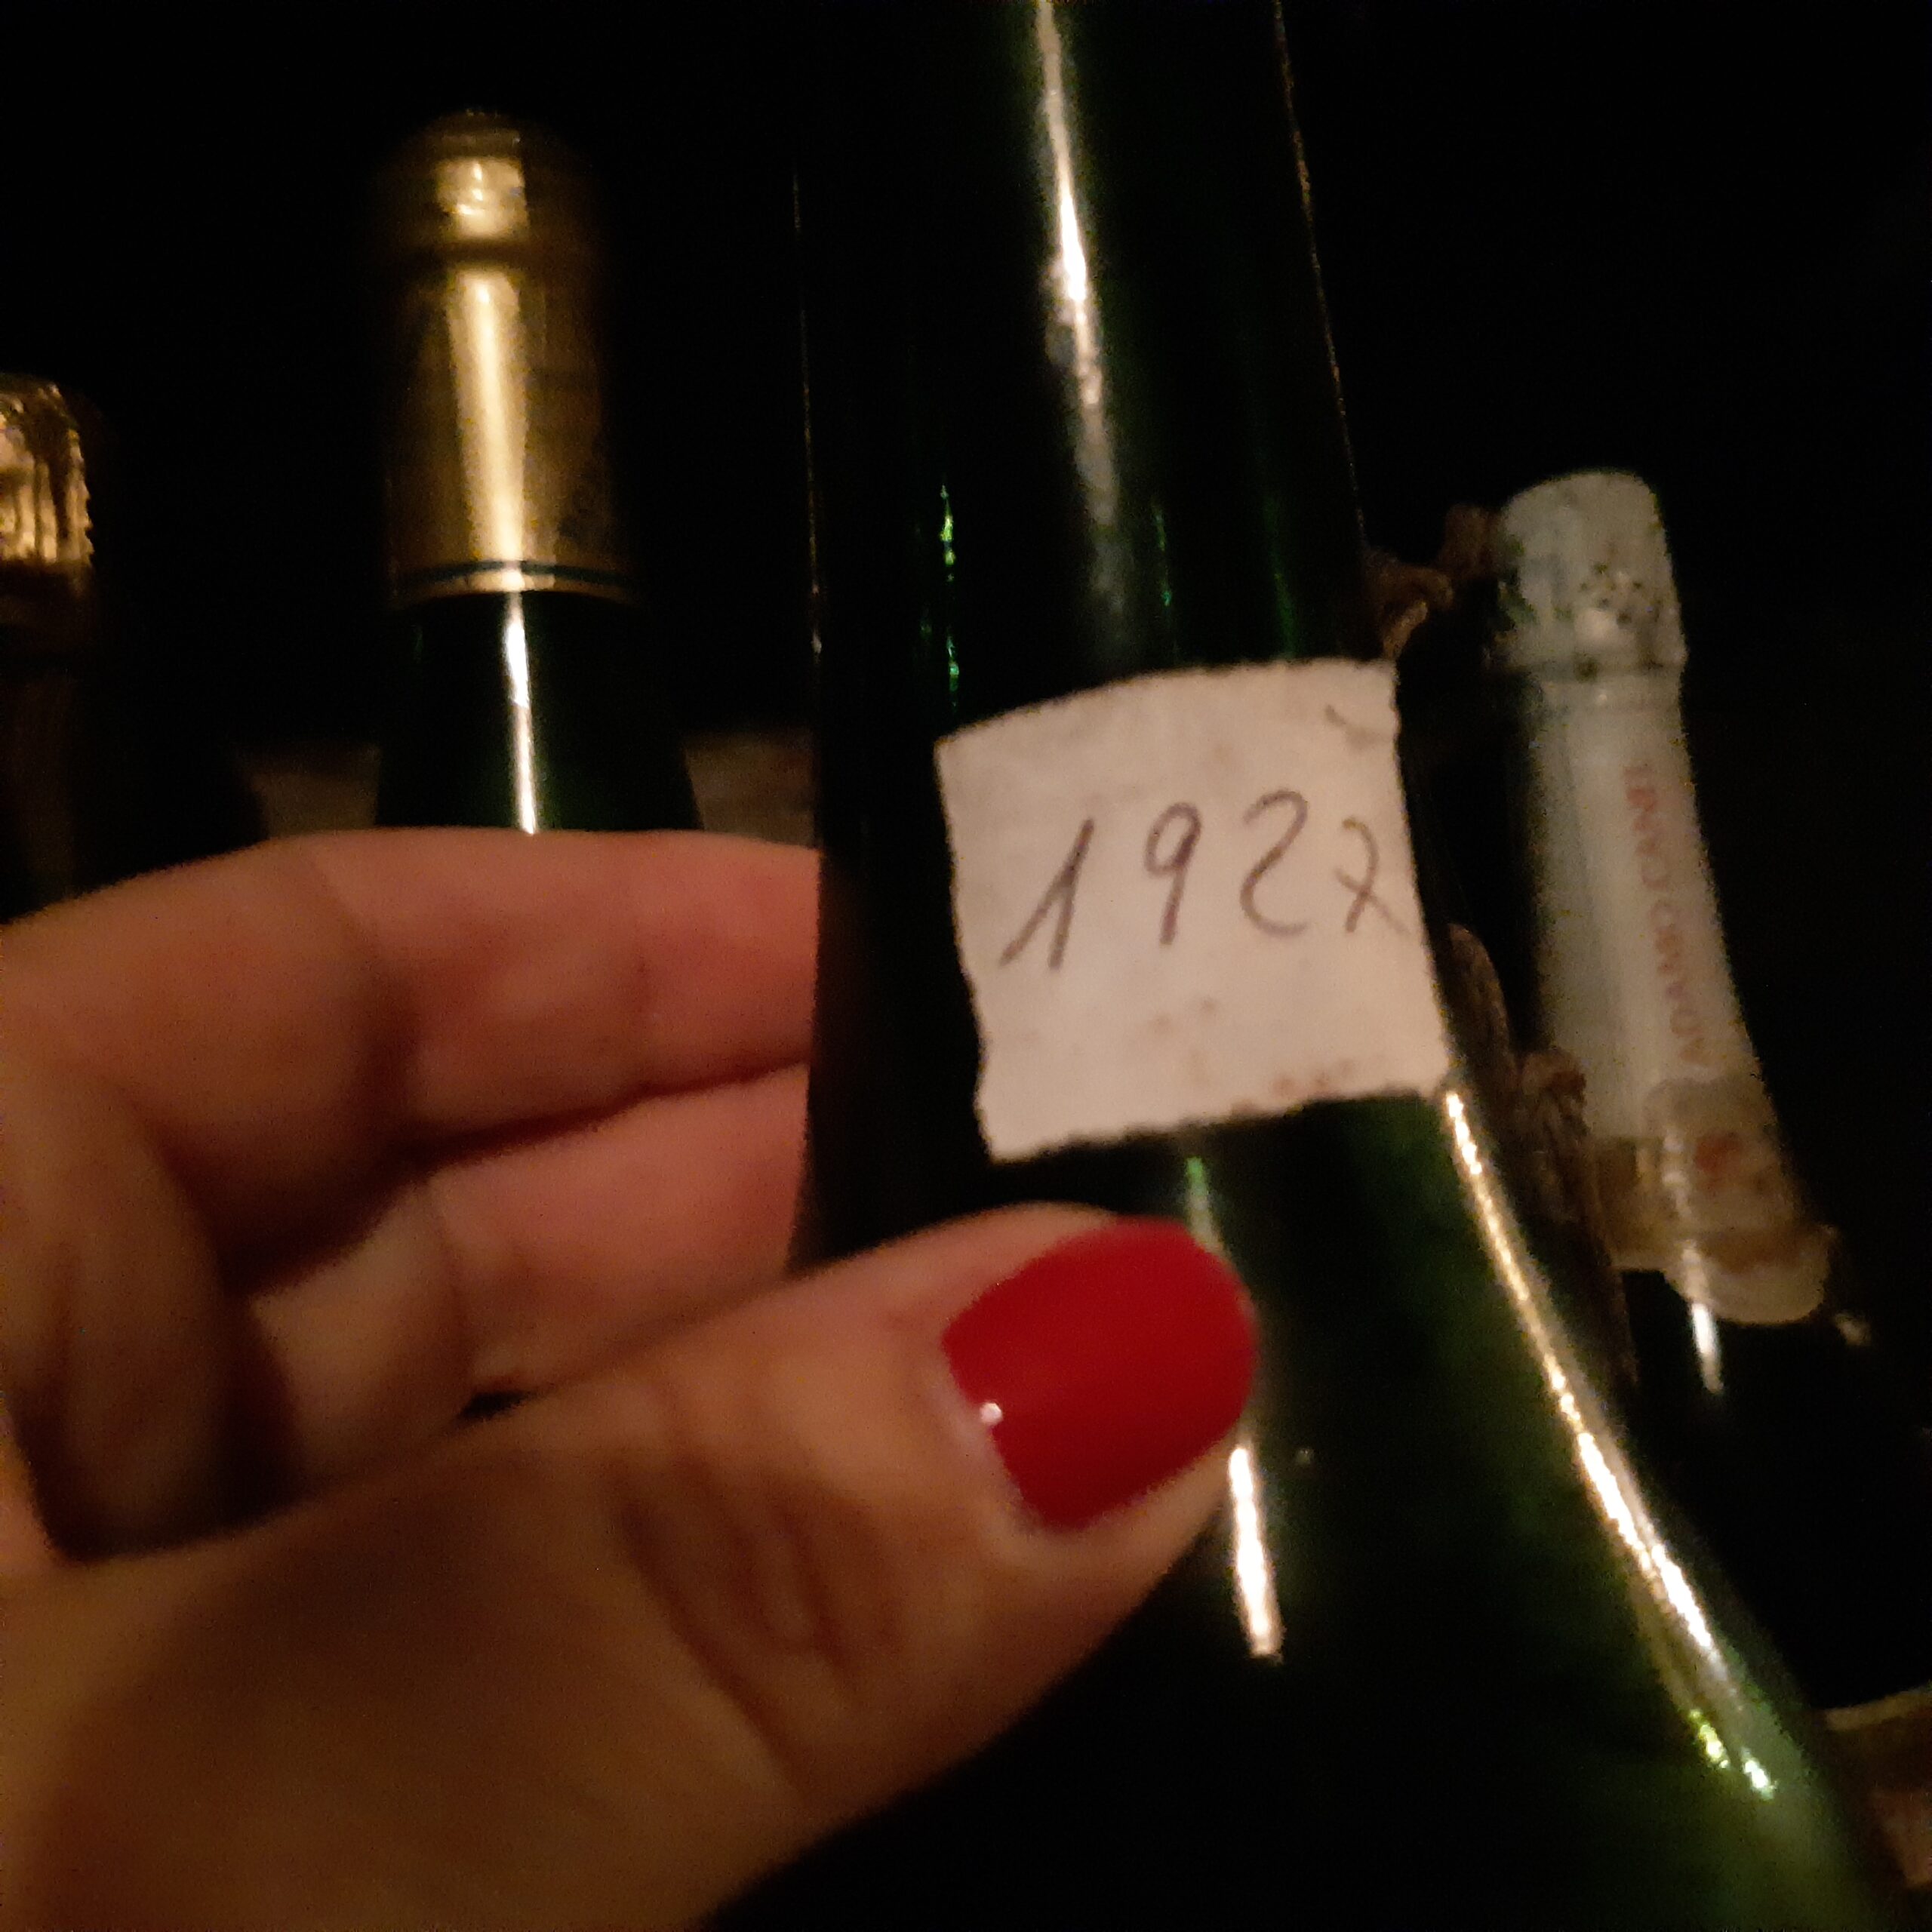 Bottiglie annate vecchie di Prosecco conservate dalla Confraternita, foto di Carol Agostini